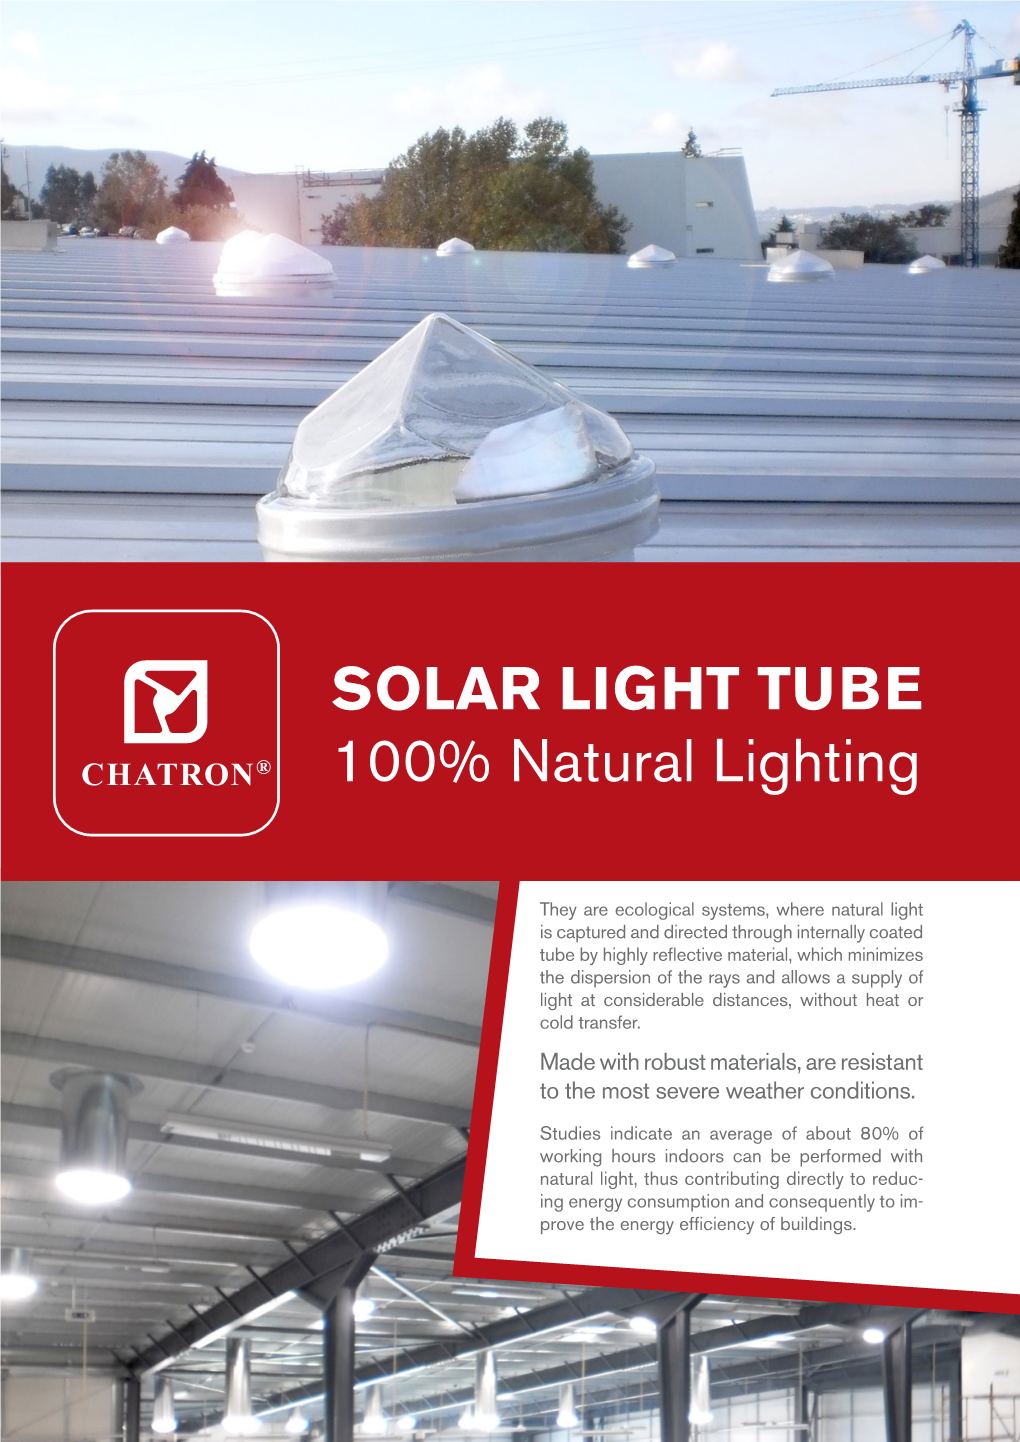 SOLAR LIGHT TUBE 100% Natural Lighting